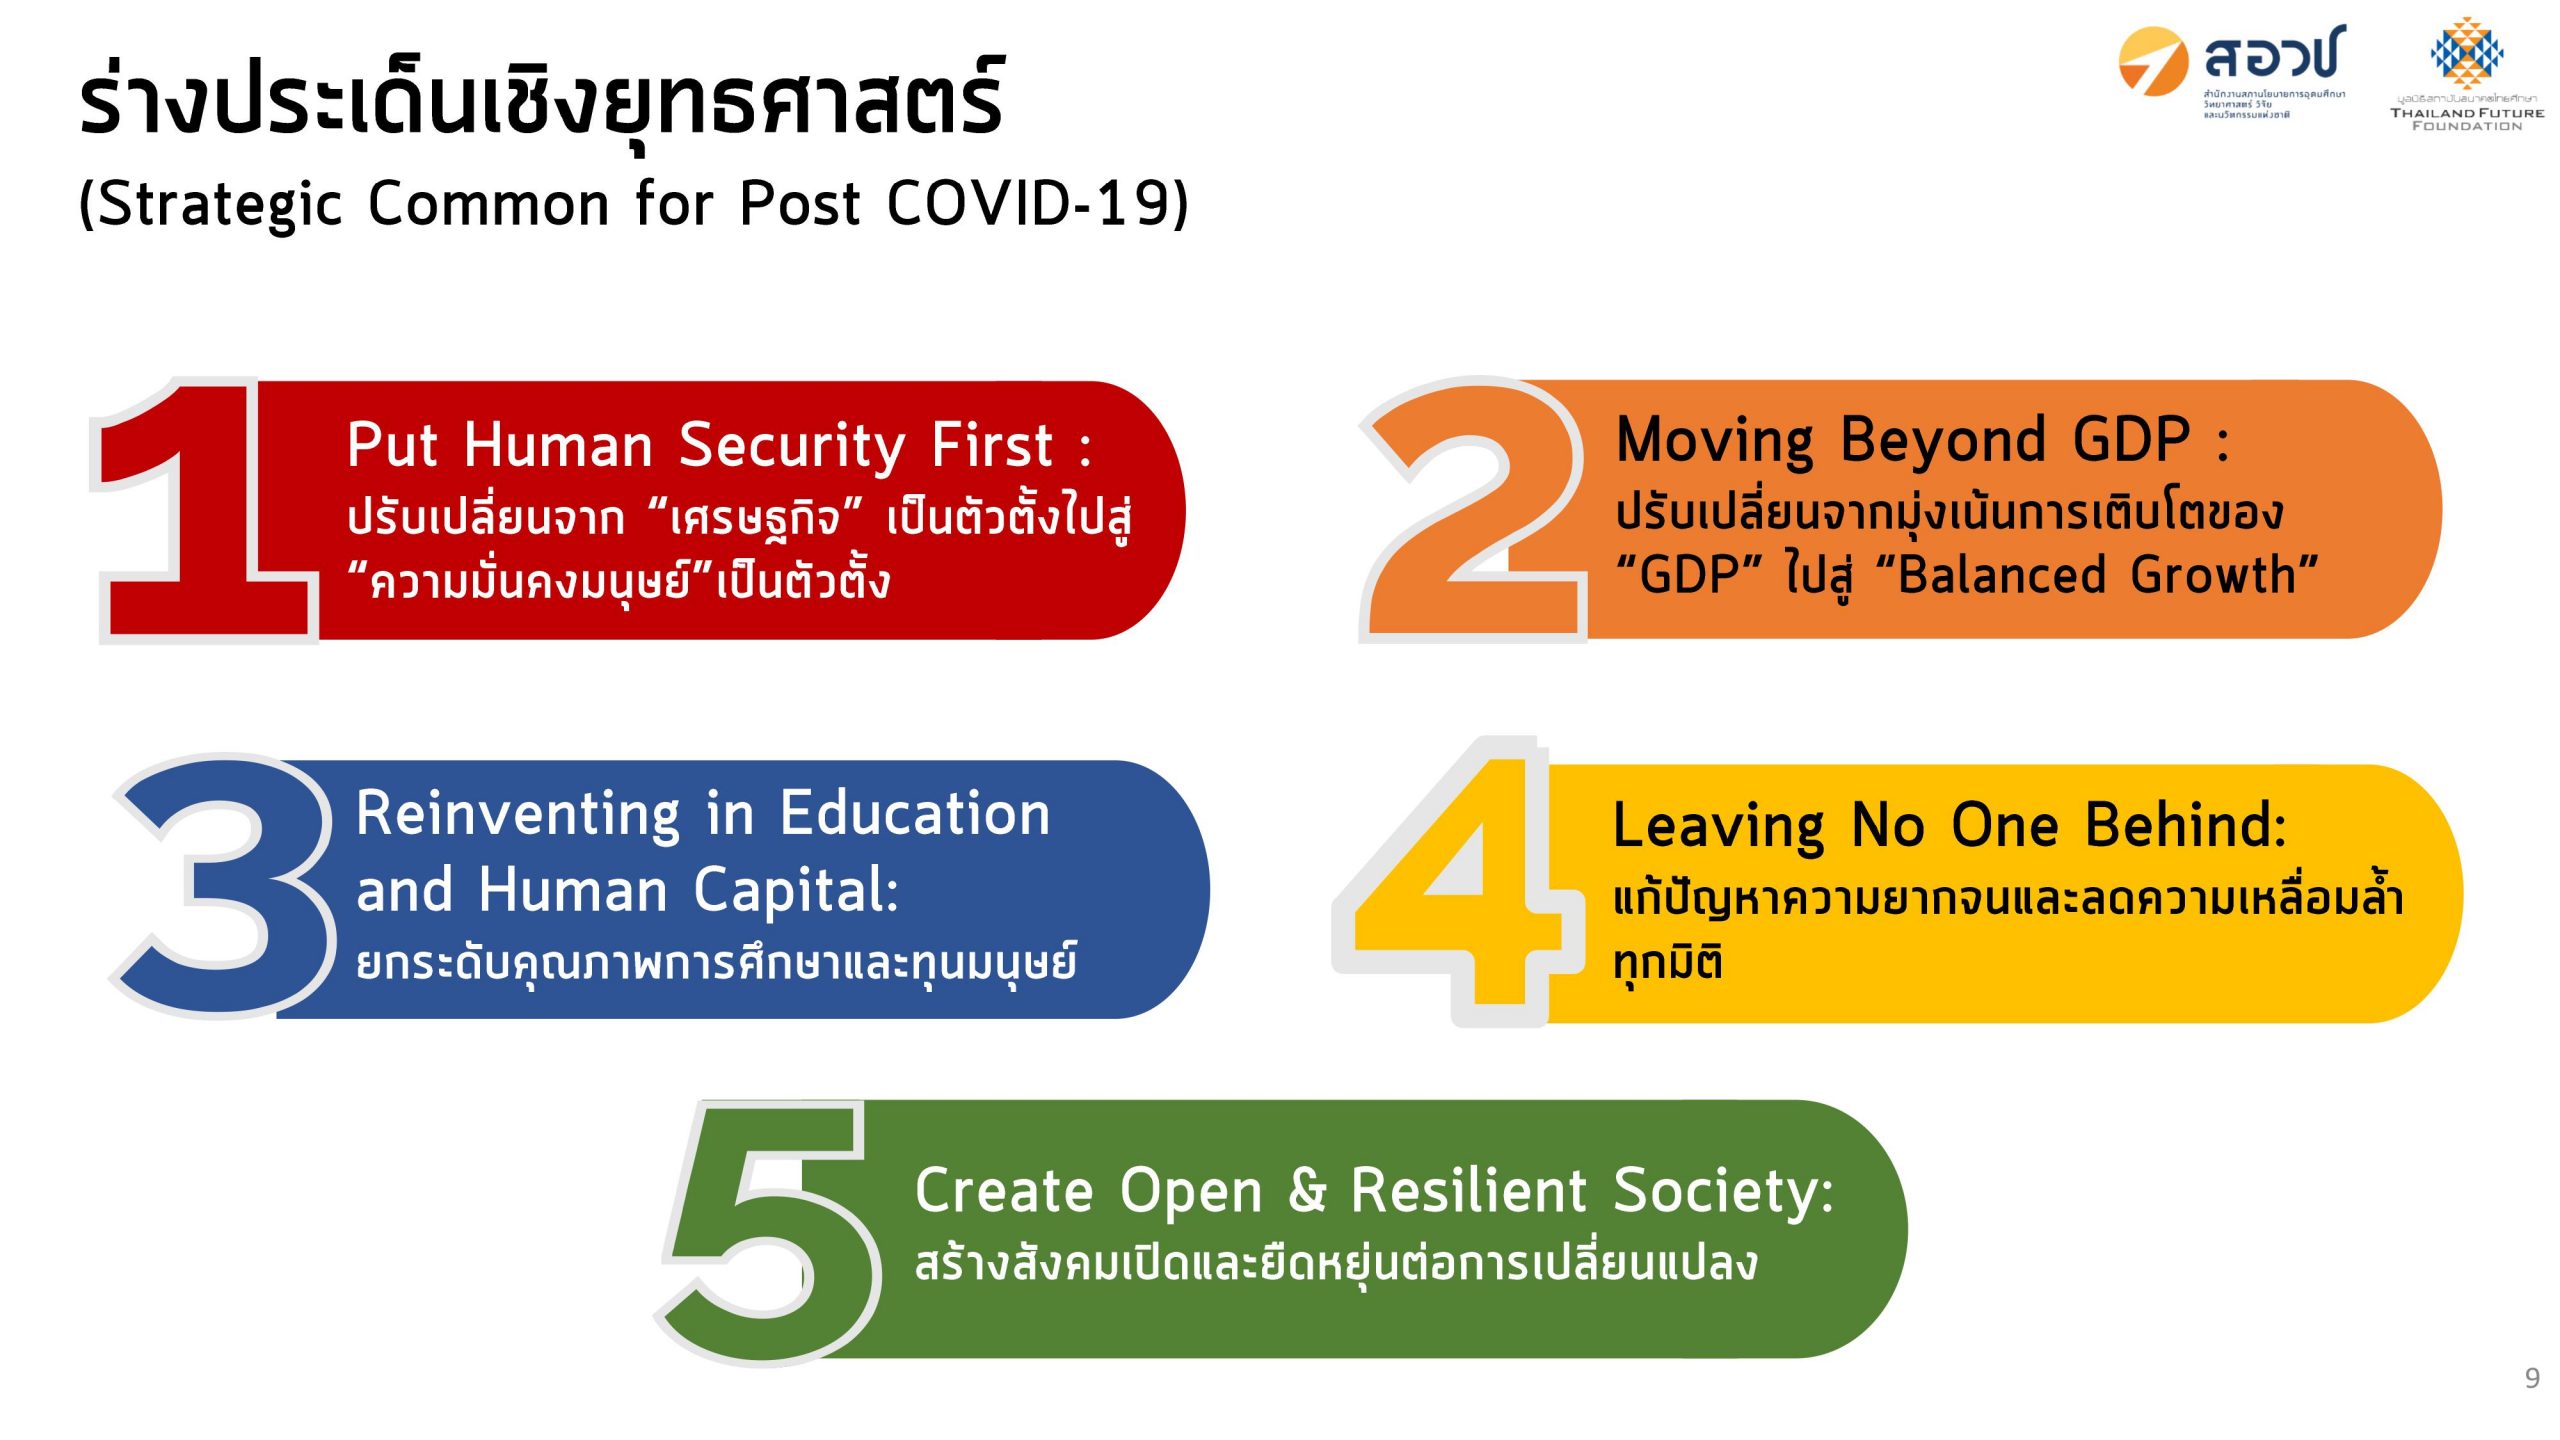 สอวช. ร่วมกับ มูลนิธิสถาบันอนาคตไทยศึกษา ฉายภาพประเทศไทย 4 หลังเผชิญวิกฤตการณ์โควิด